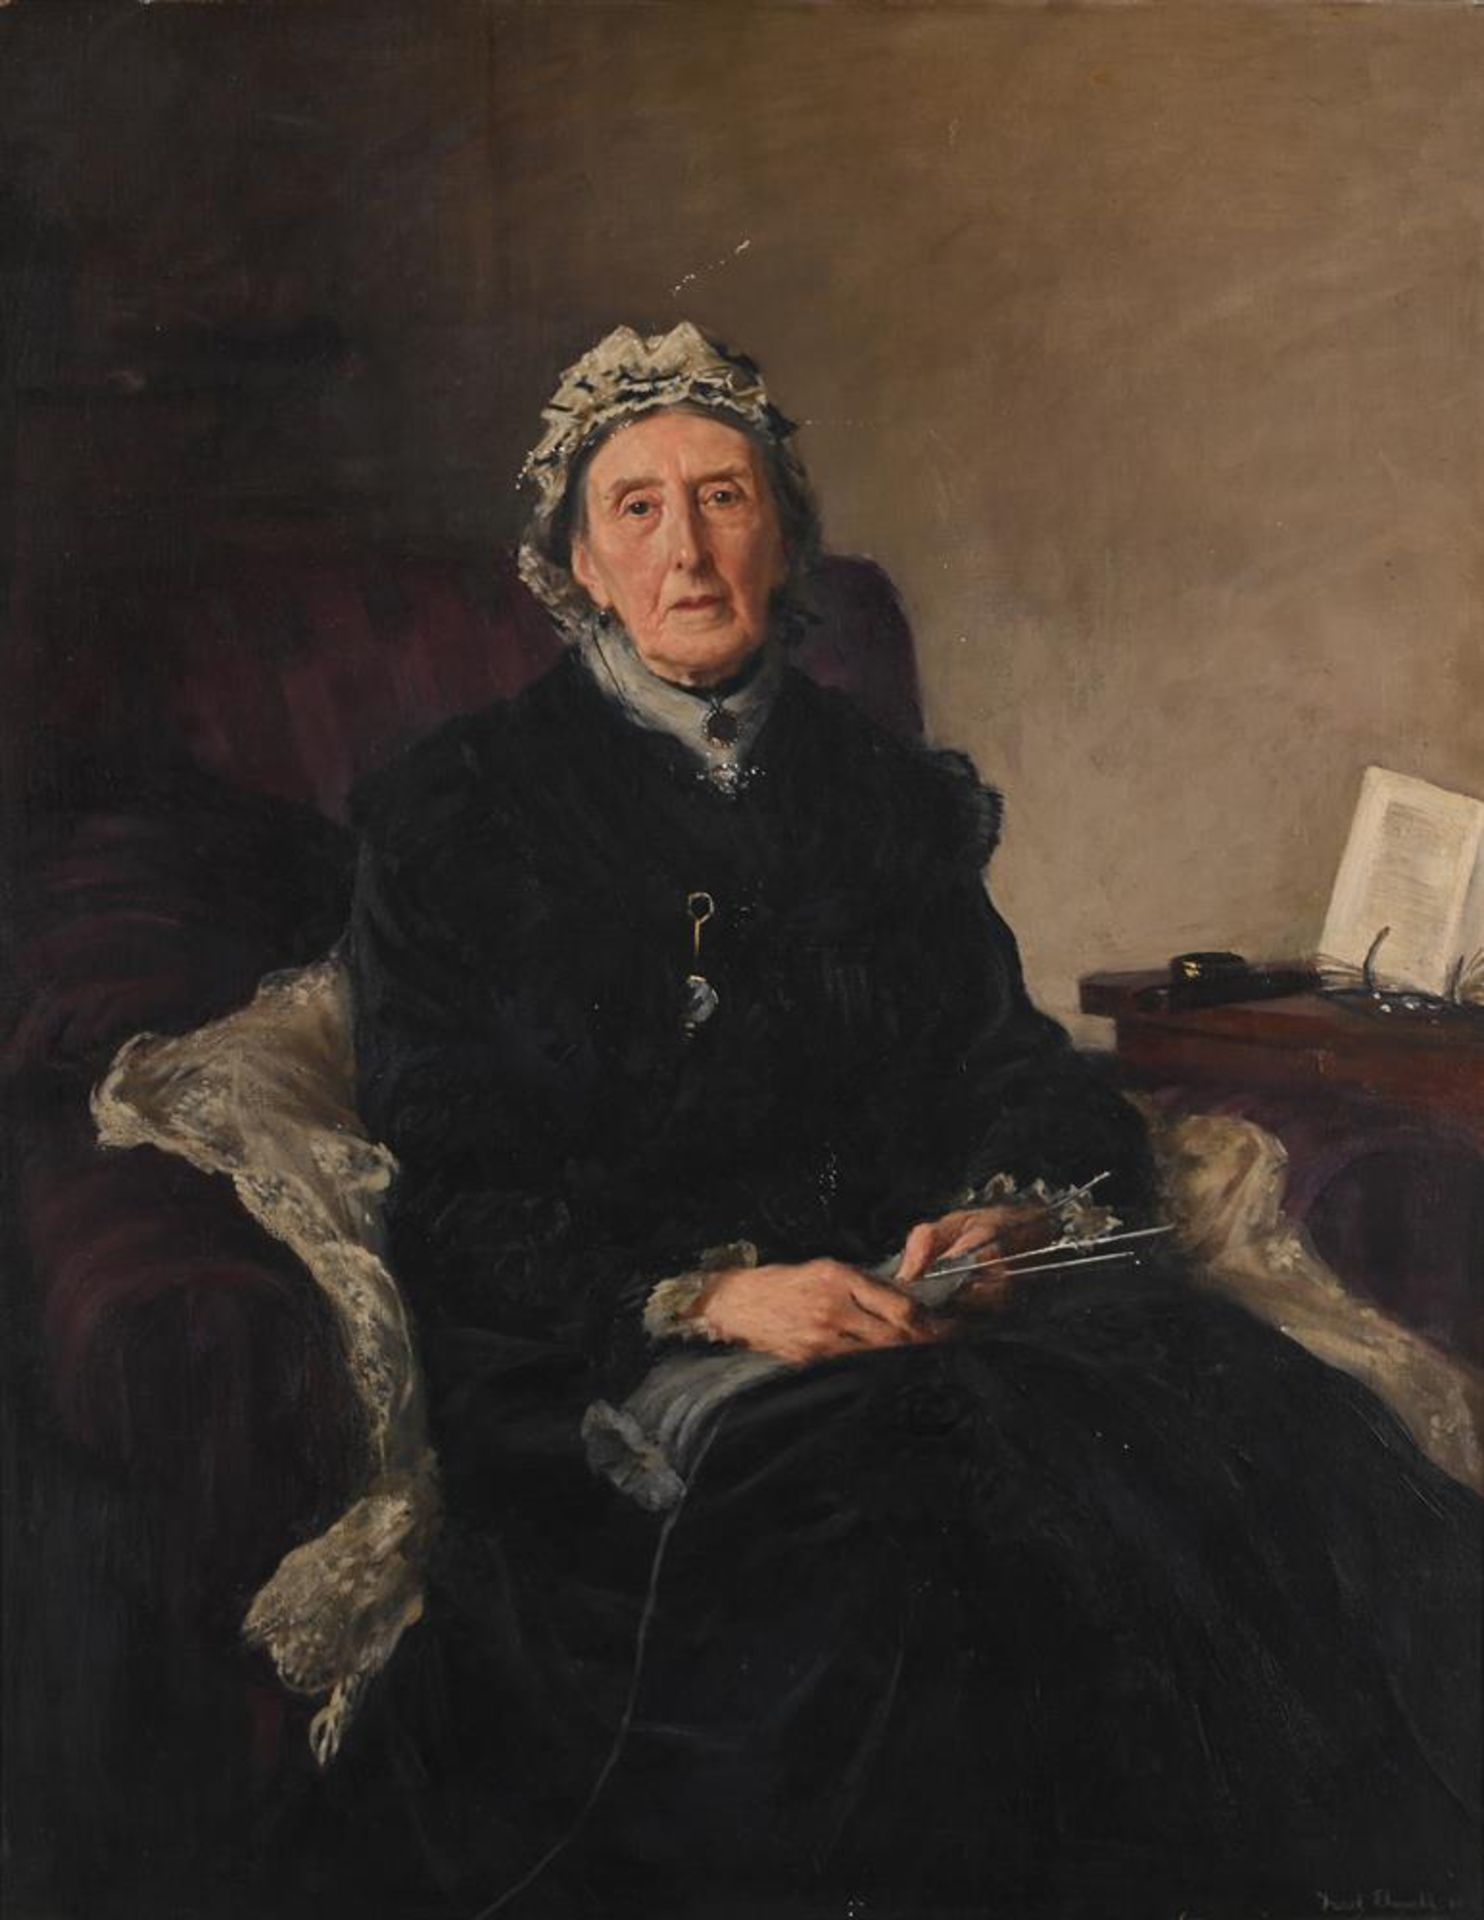 λ FREDERICK WILLIAM ELWELL (BRITSH 1870-1958), PORTRAIT OF HON. MRS. T.G. CHOLMONDELEY